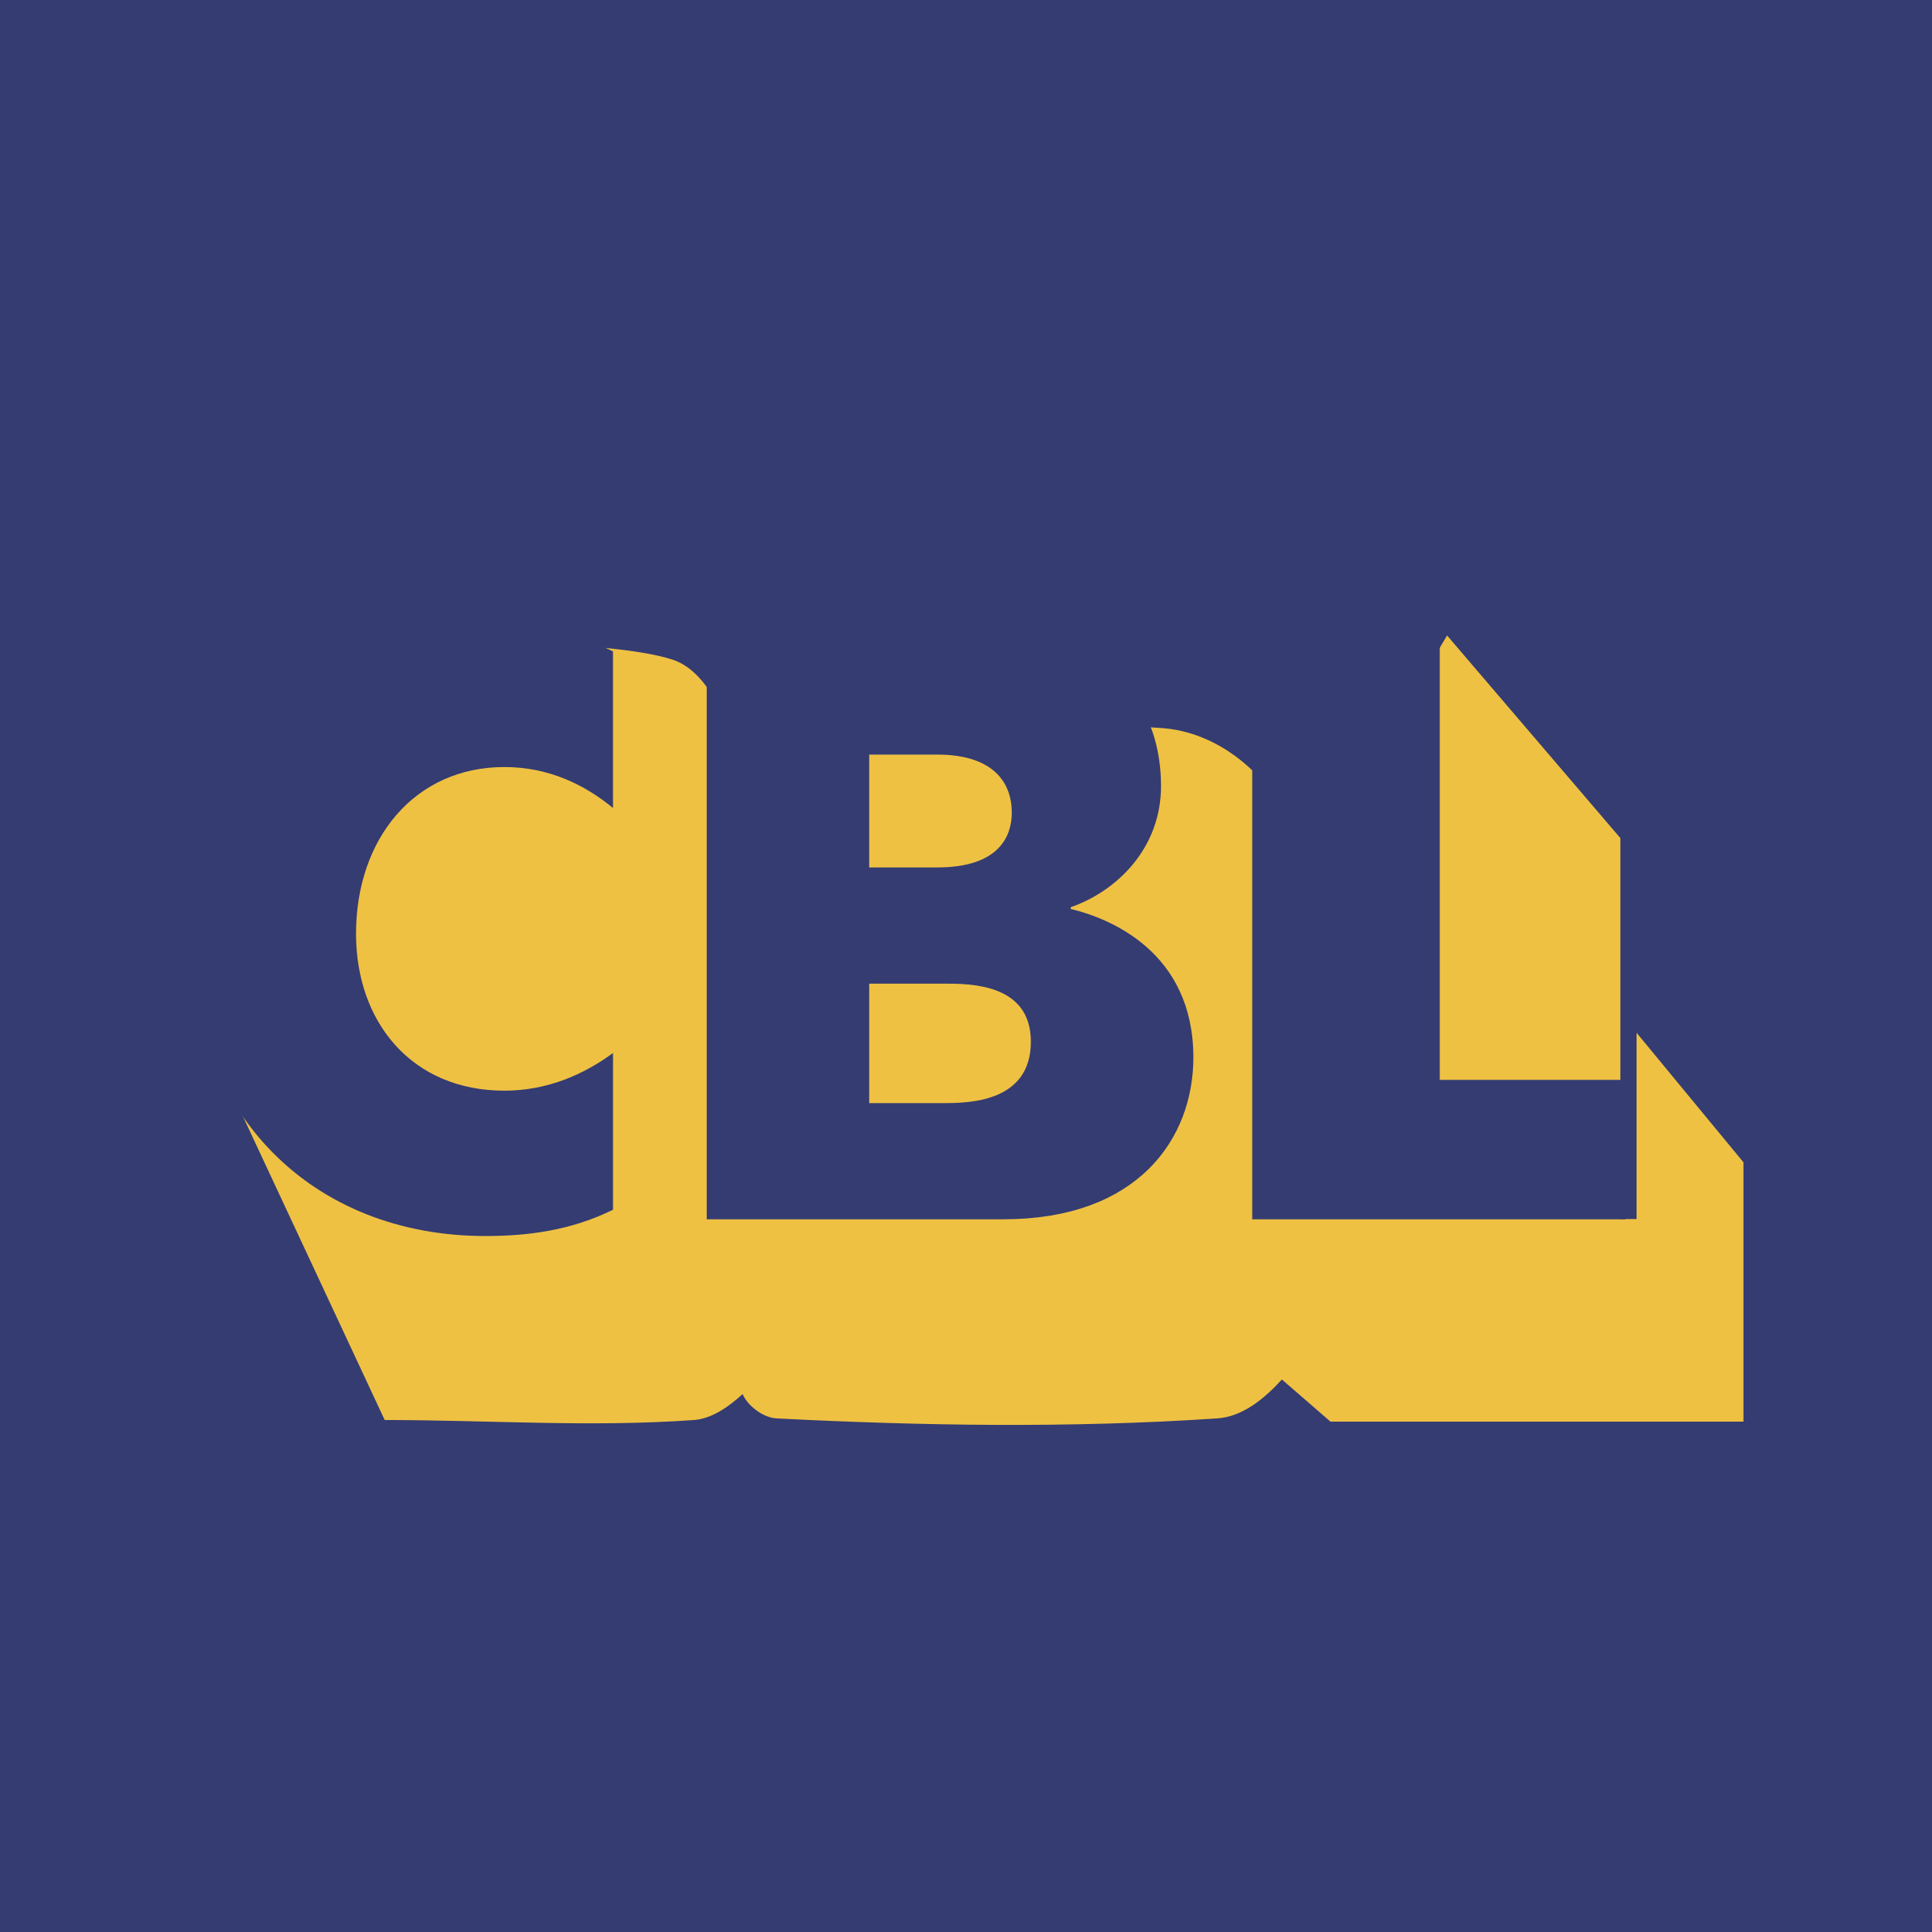 CBL Logo - CBL Logo PNG Transparent & SVG Vector